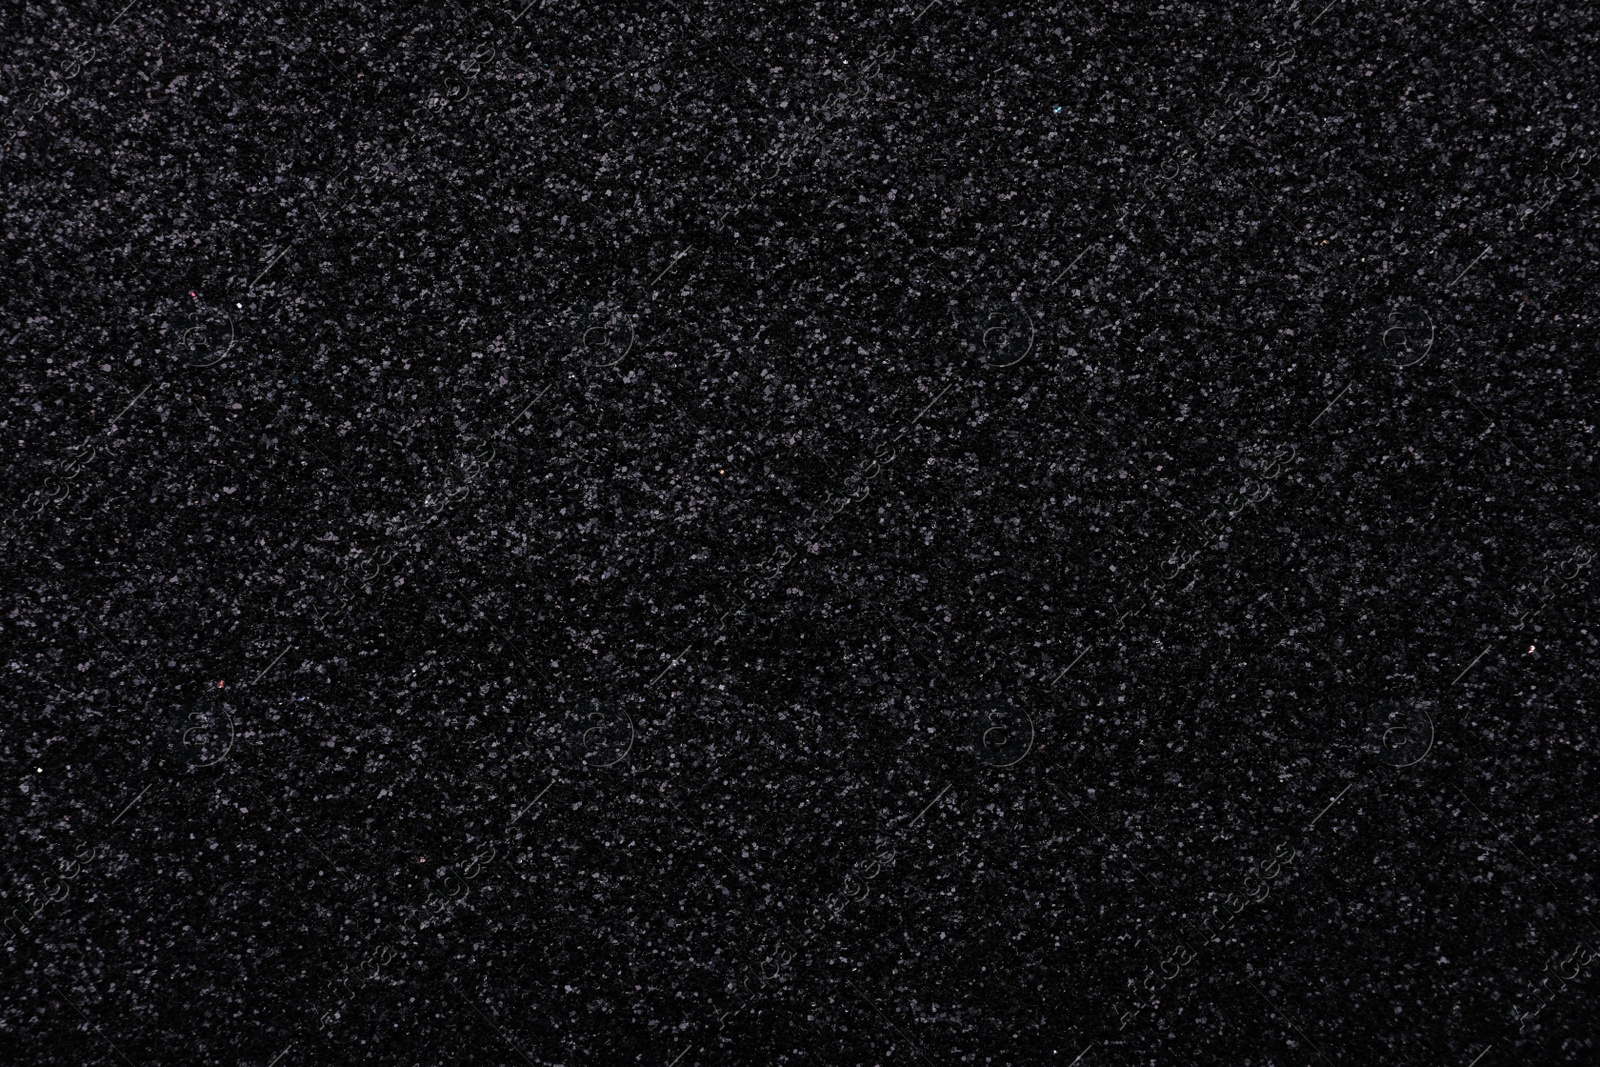 Photo of Beautiful shiny black glitter as background, closeup